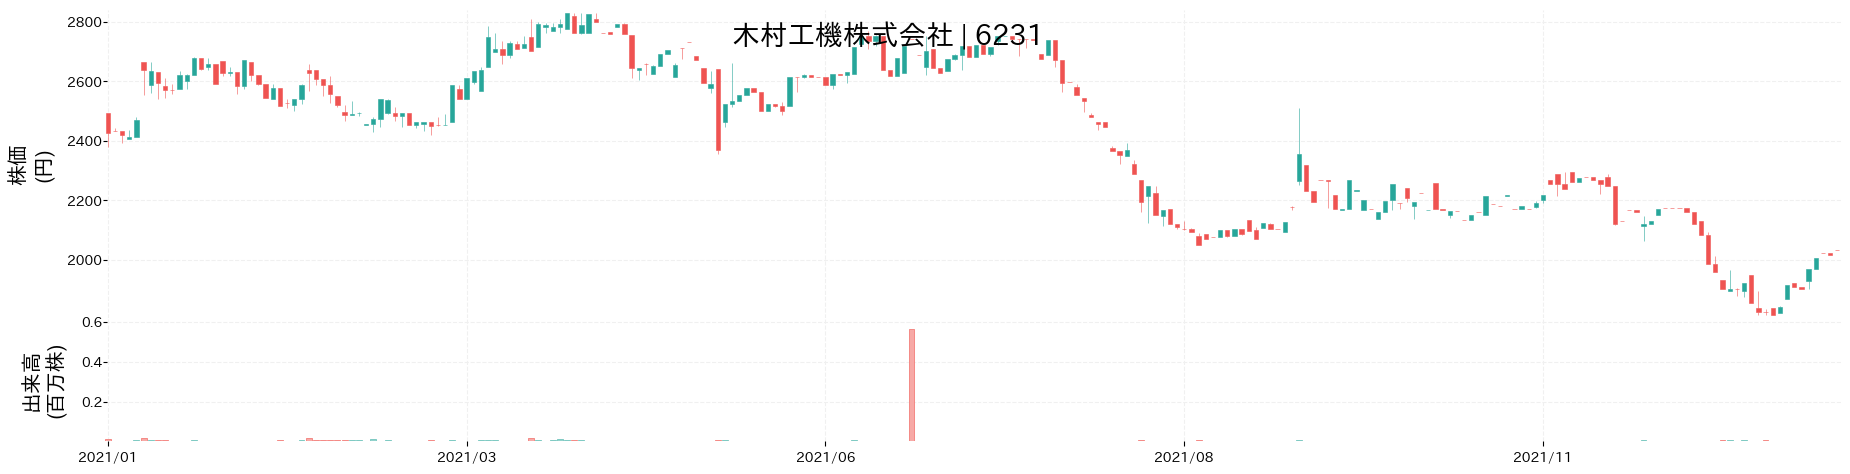 木村工機の株価推移(2021)